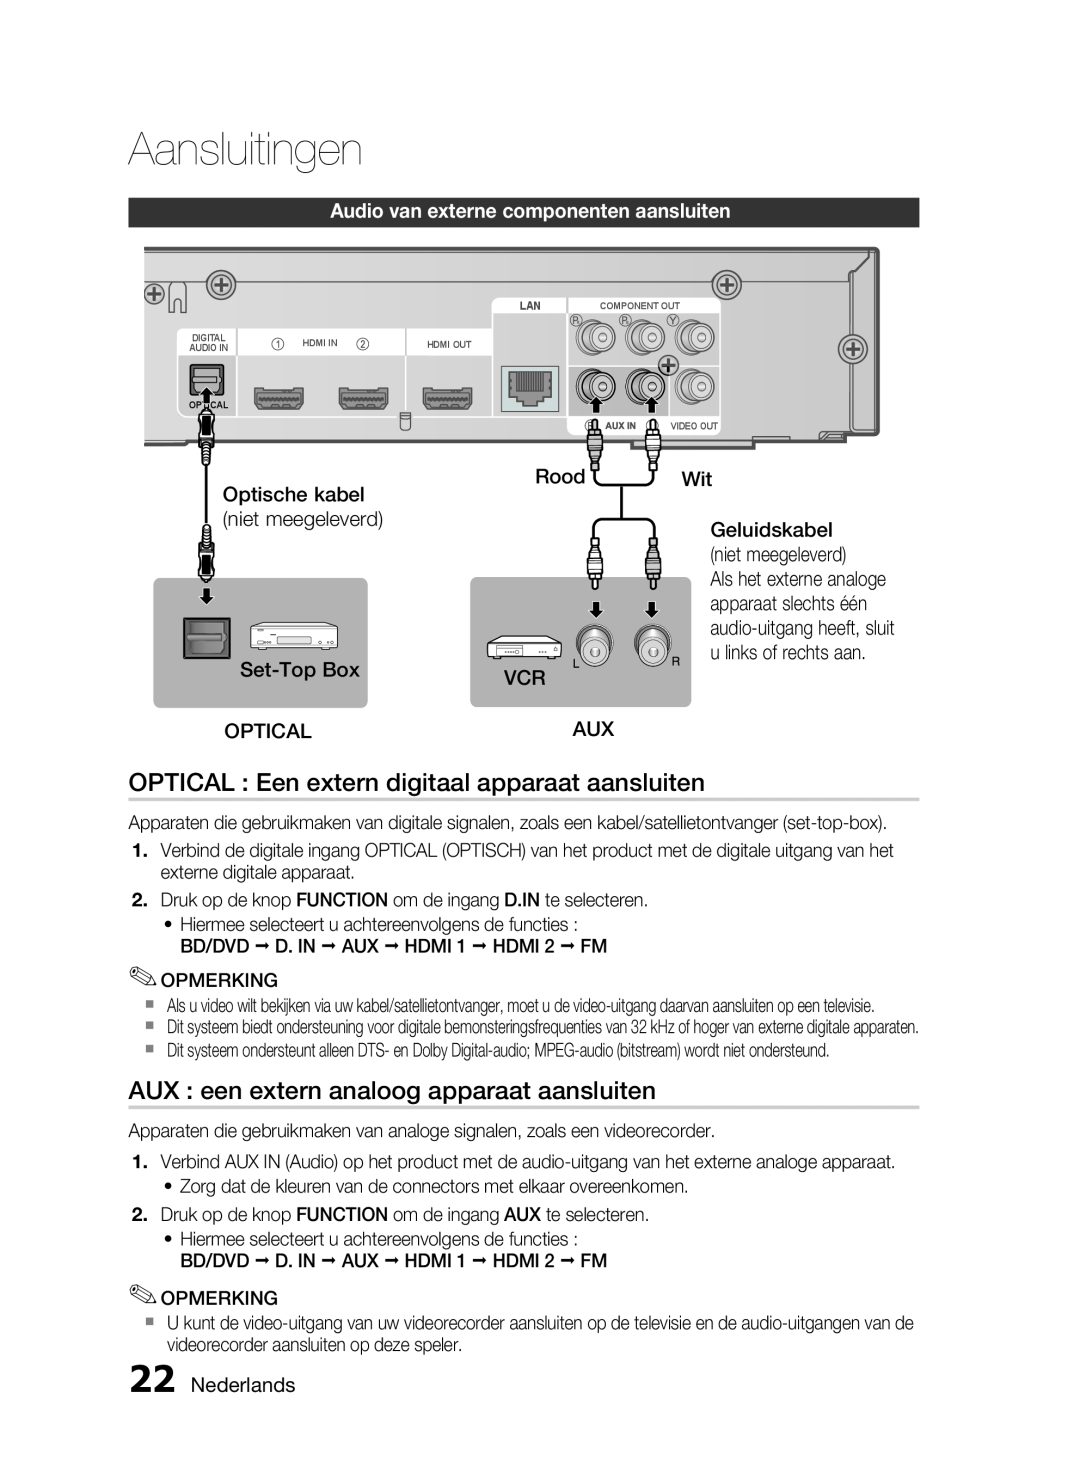 Samsung HT-C6200/XEF OPTICAL Een extern digitaal apparaat aansluiten, AUX een extern analoog apparaat aansluiten, Rood VCR 